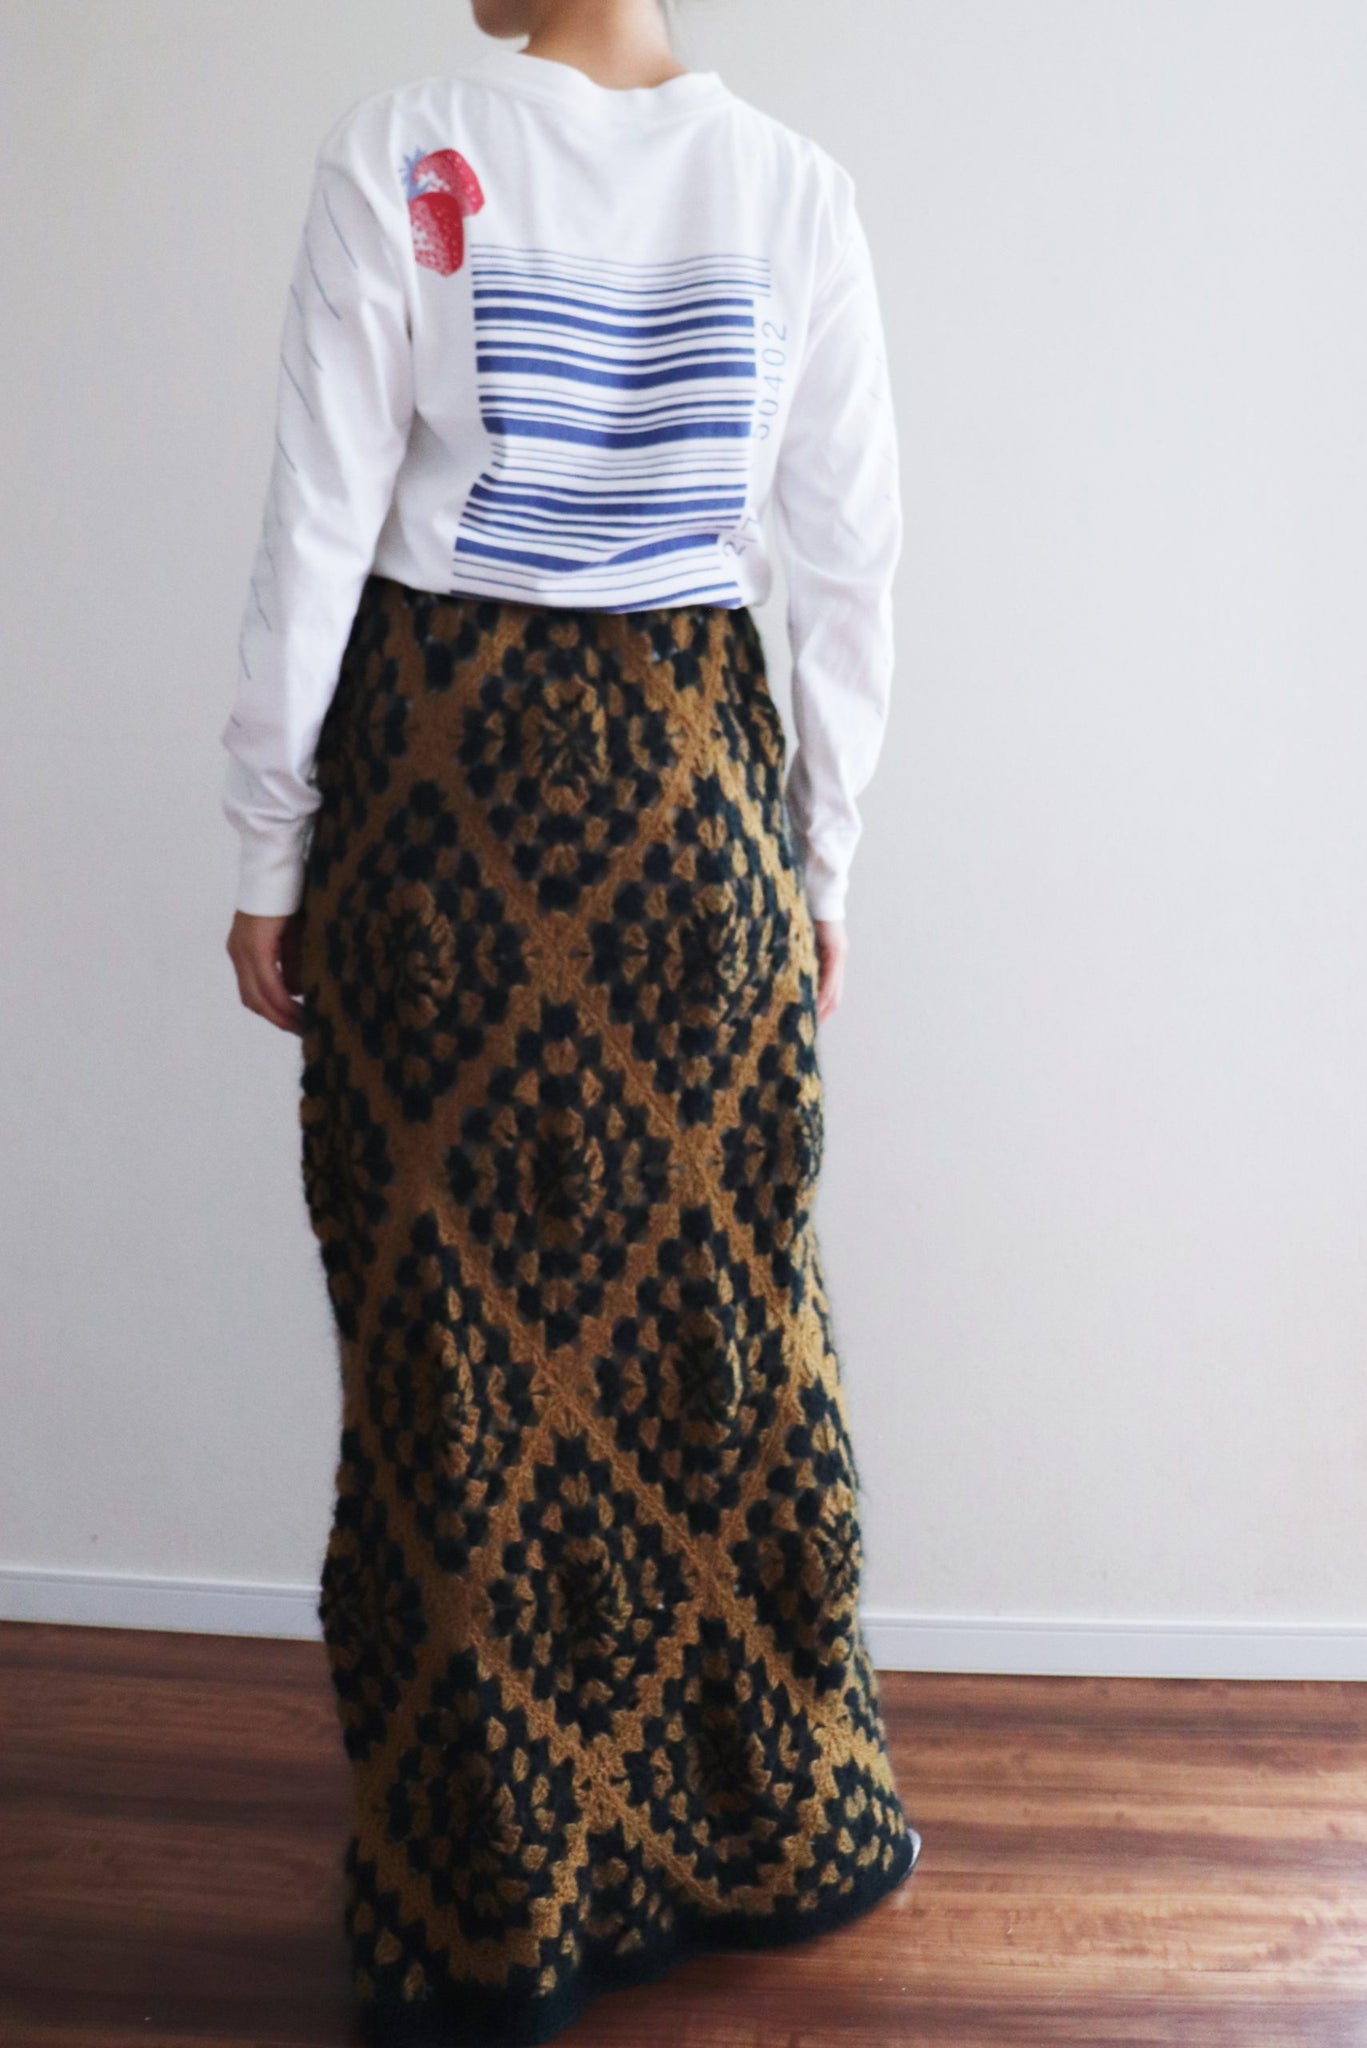 70s Mohair Crochet Floor Length Skirt